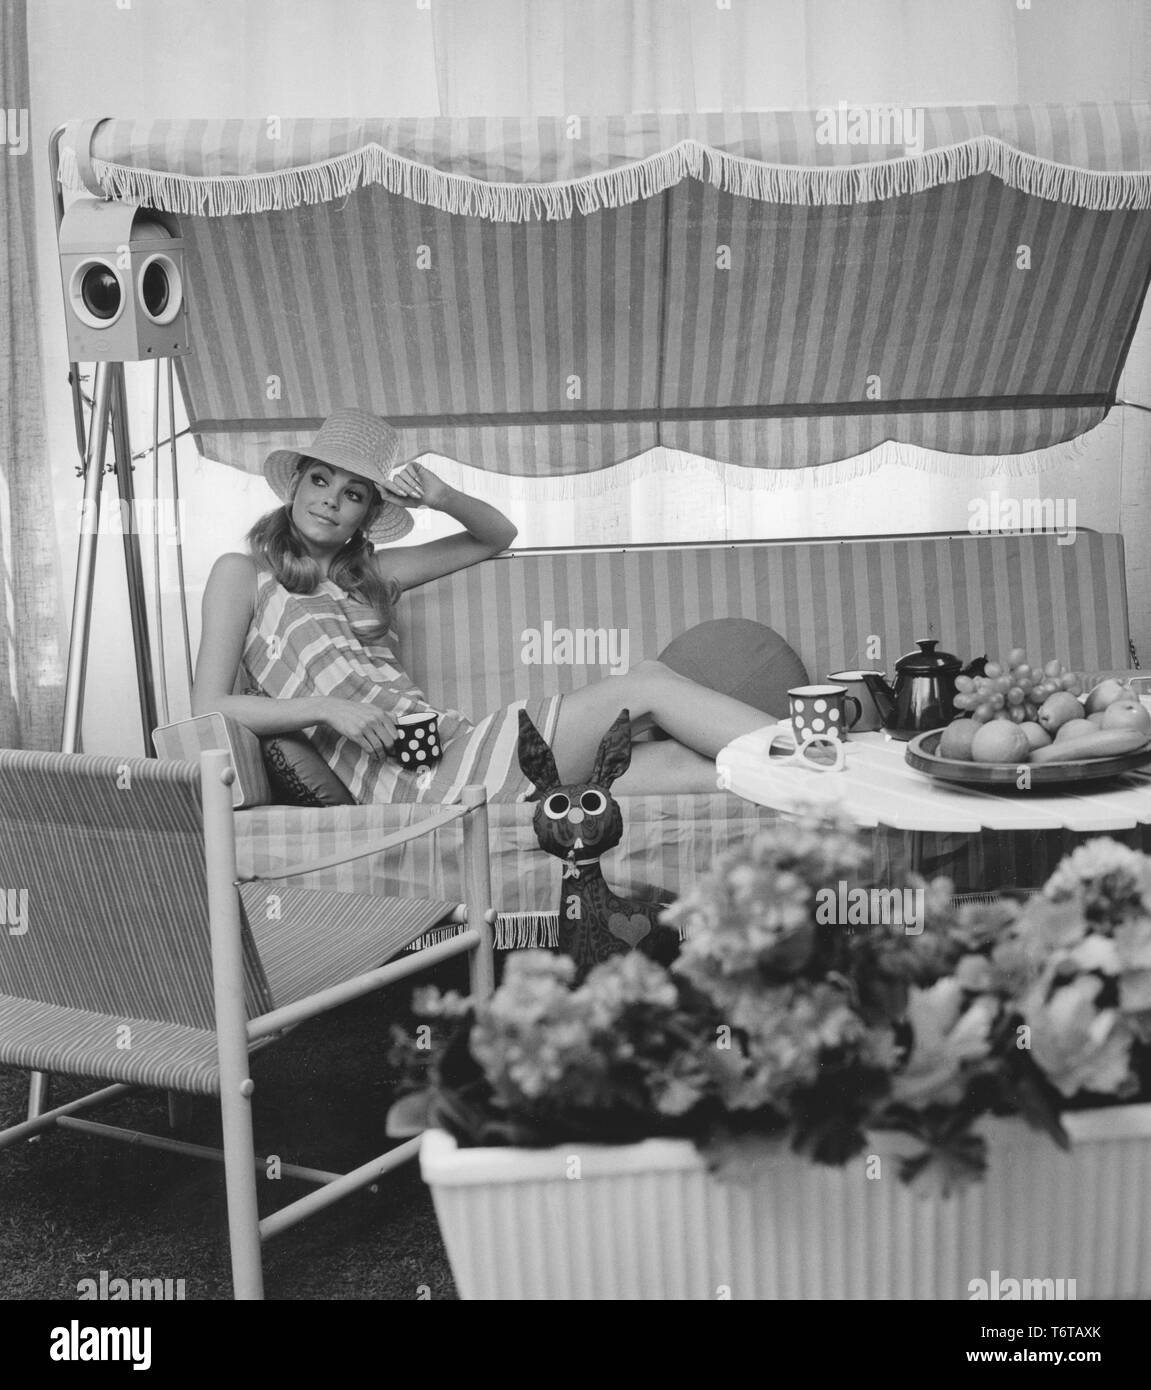 El verano de 1960. Un joven está sentado en una hamaca comforably bebiendo café. El diseño de los muebles y su vestido representa el decenio 1960 muy bien. Suecia 1960 Foto de stock